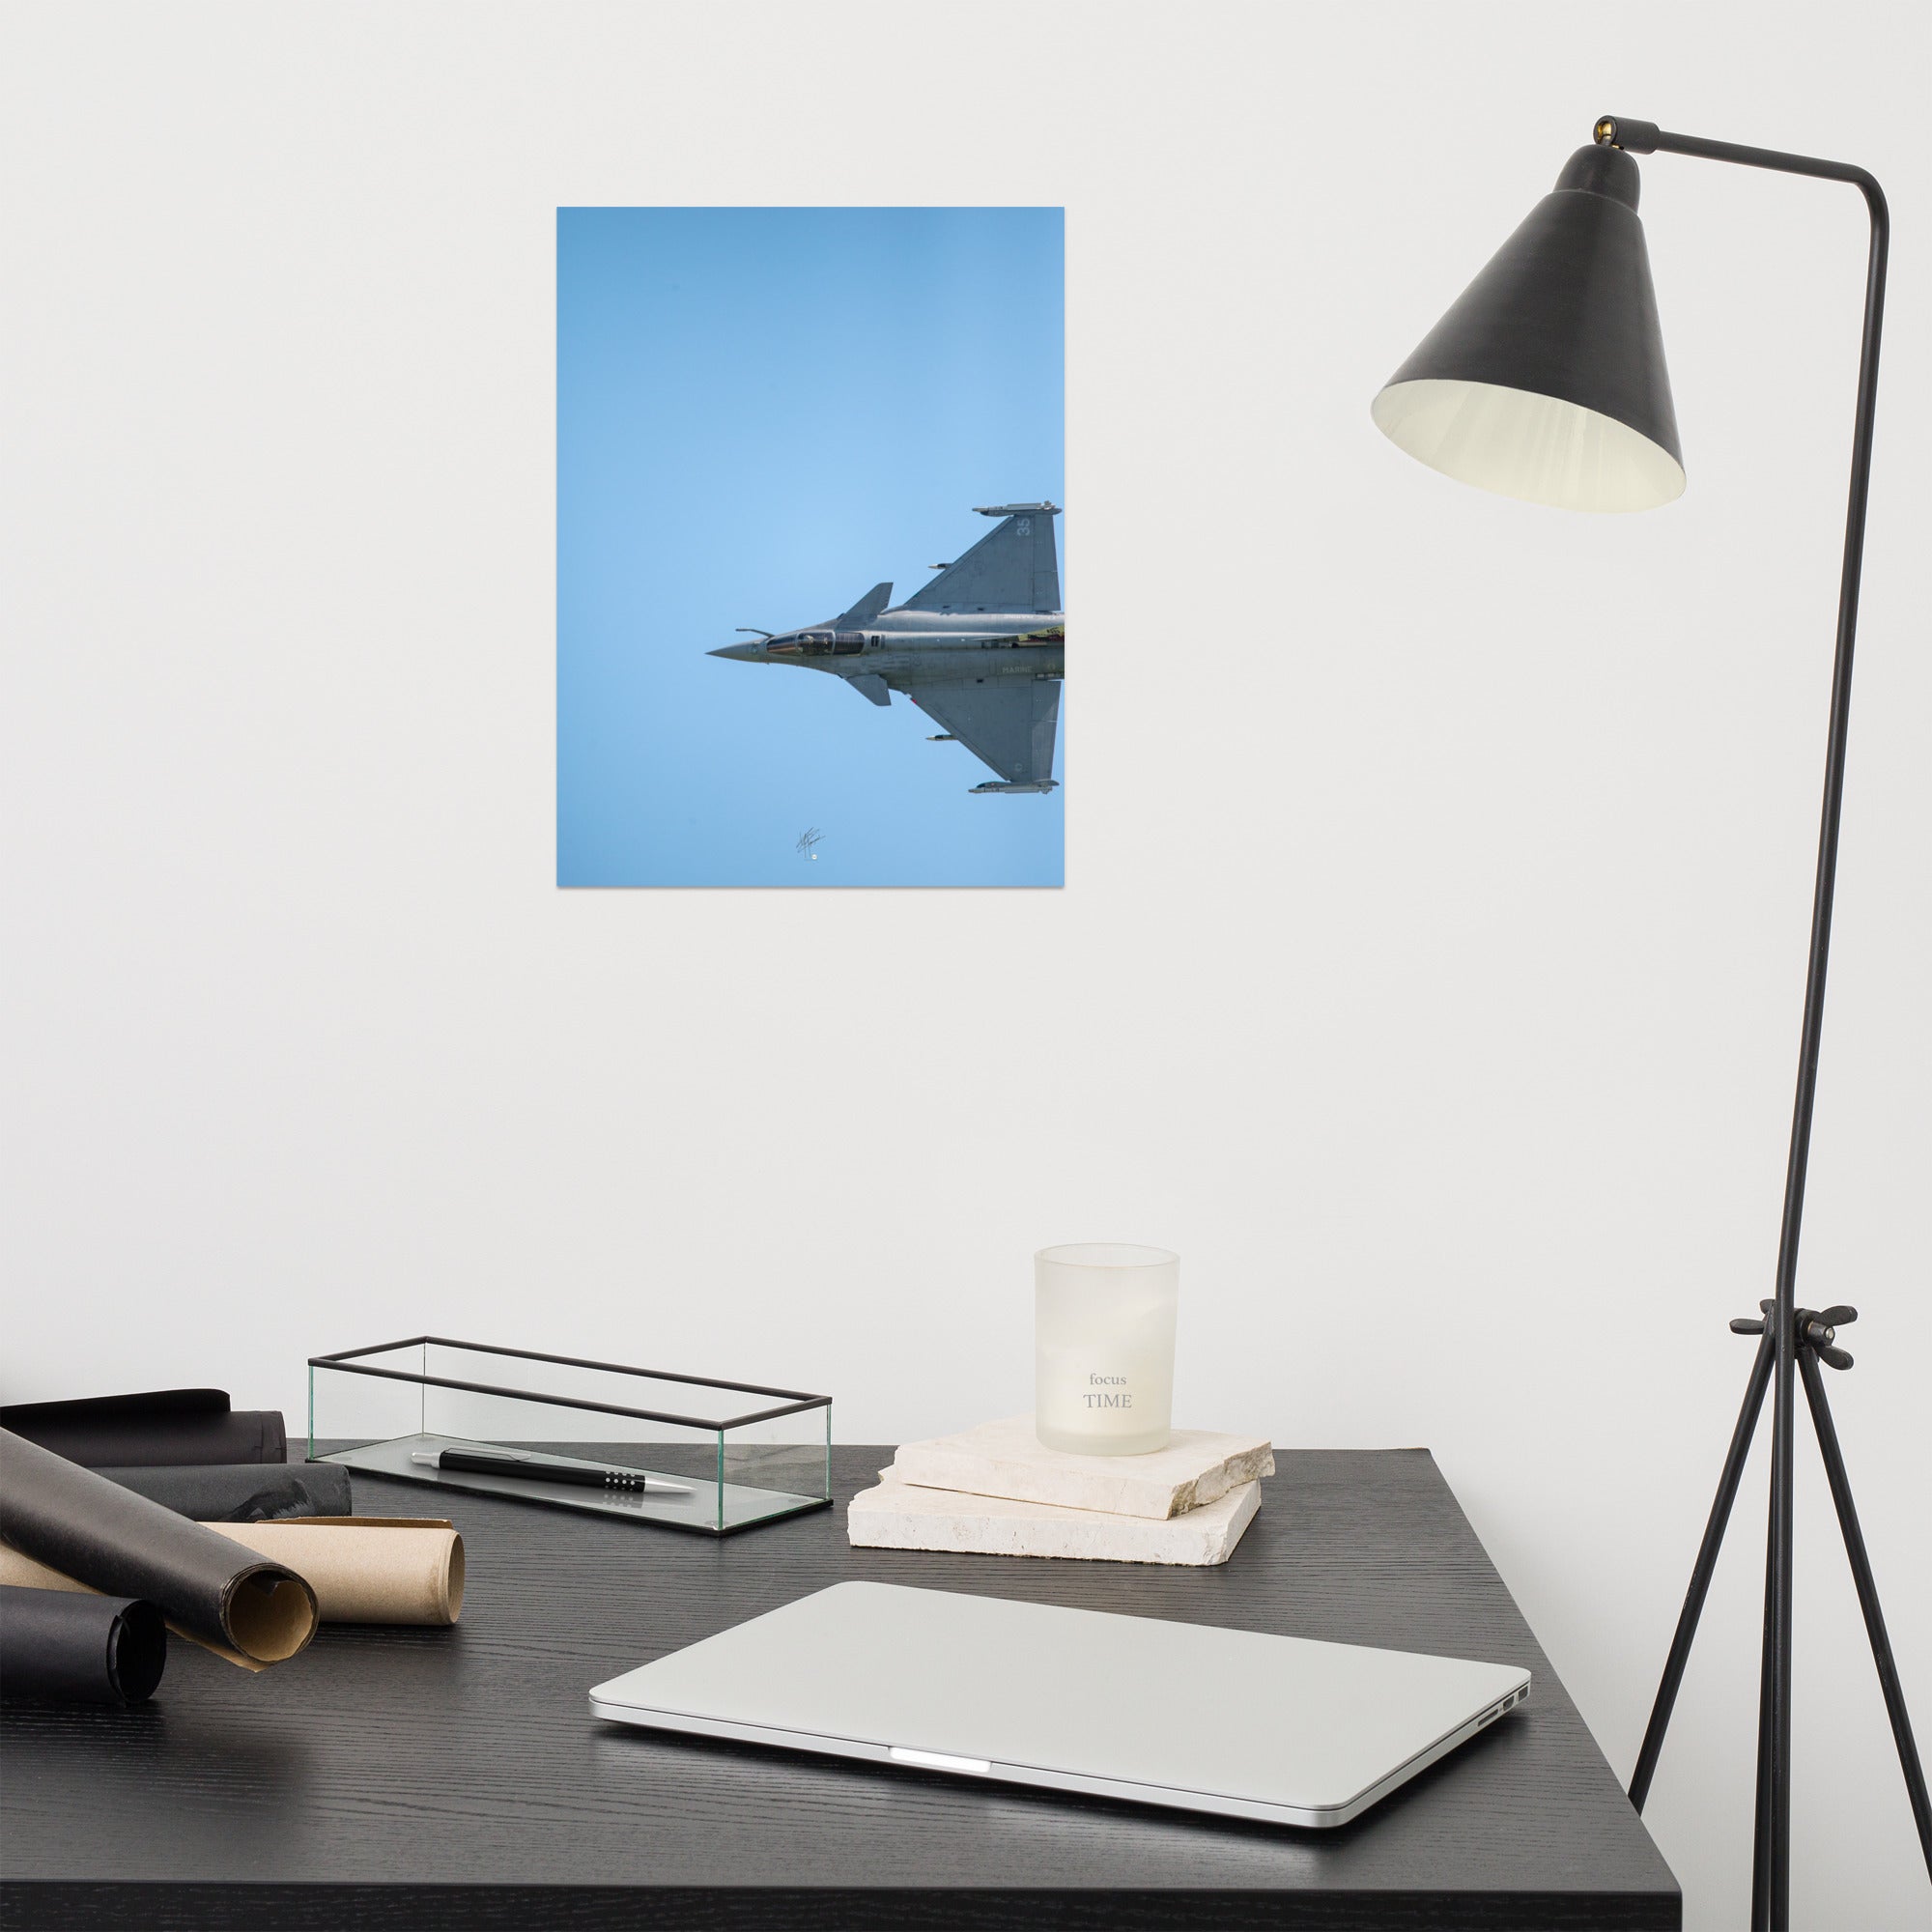 Avion de chasse Rafale vu d'une perspective aérienne, avec un ciel bleu comme toile de fond, photographié par Yann Peccard.